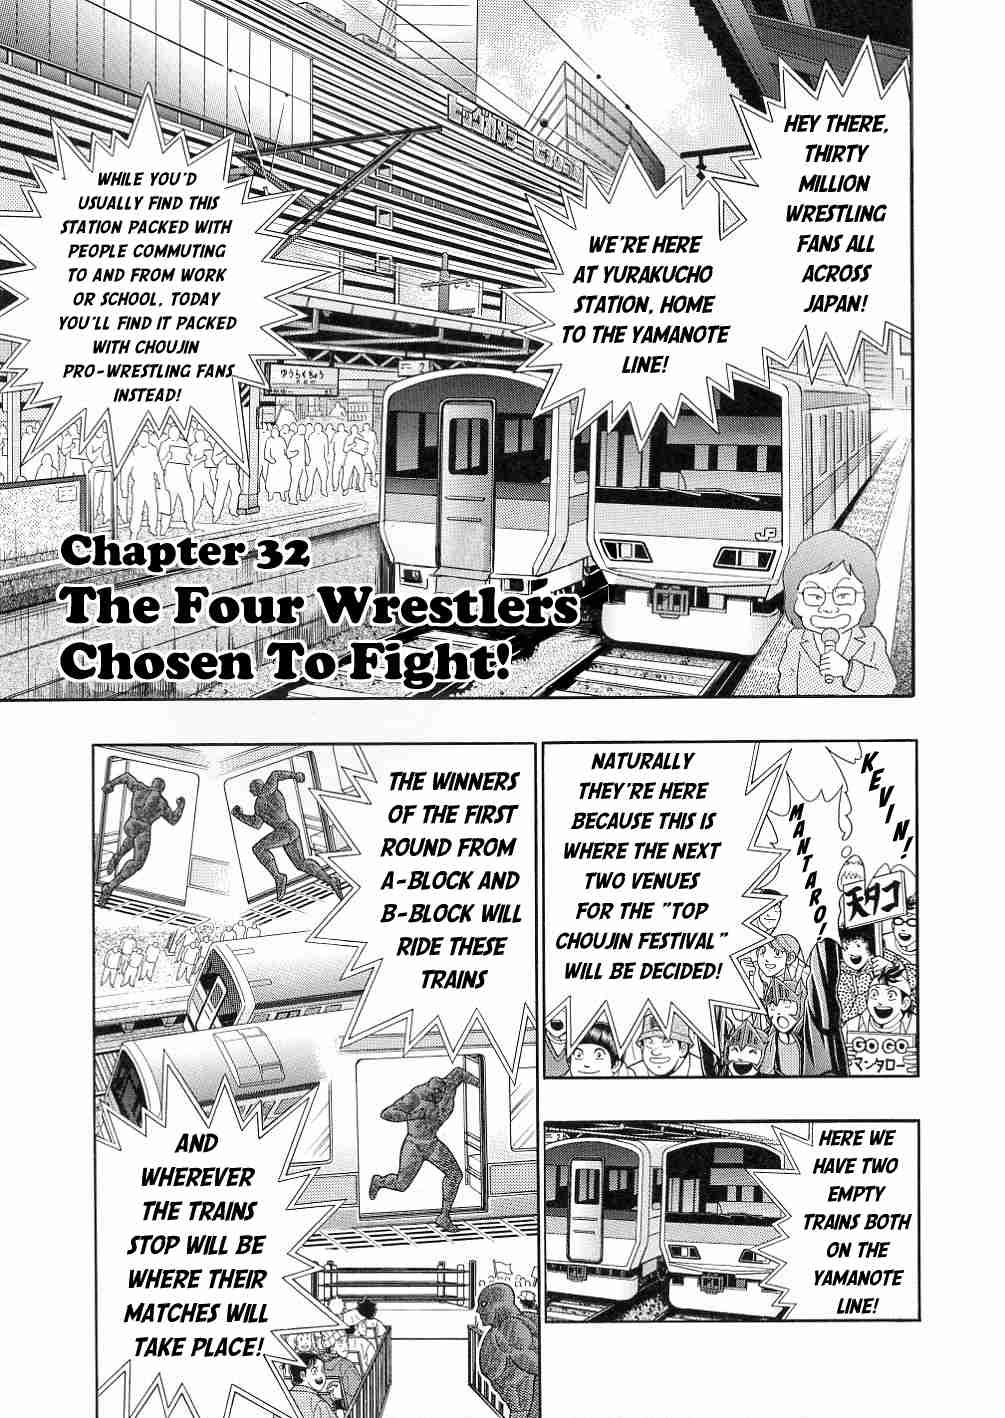 Kinnikuman II Sei: All Choujin Daishingeki Vol. 3 Ch. 32 The Four Wrestlers Chosen To Fight!